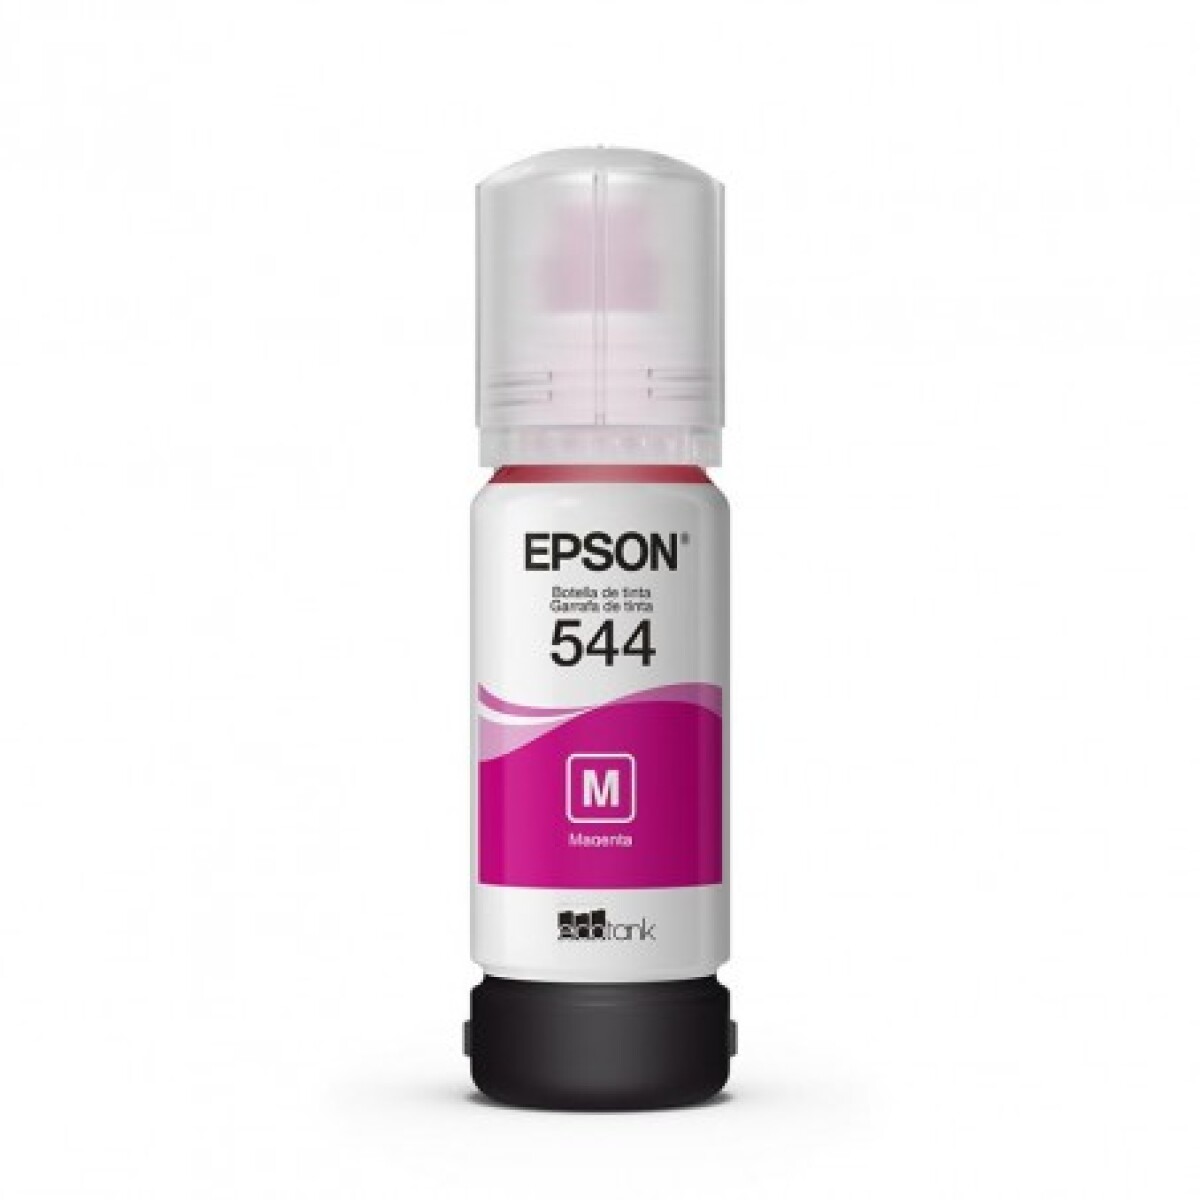 Botella de tinta epson t544 65ml - Magenta 